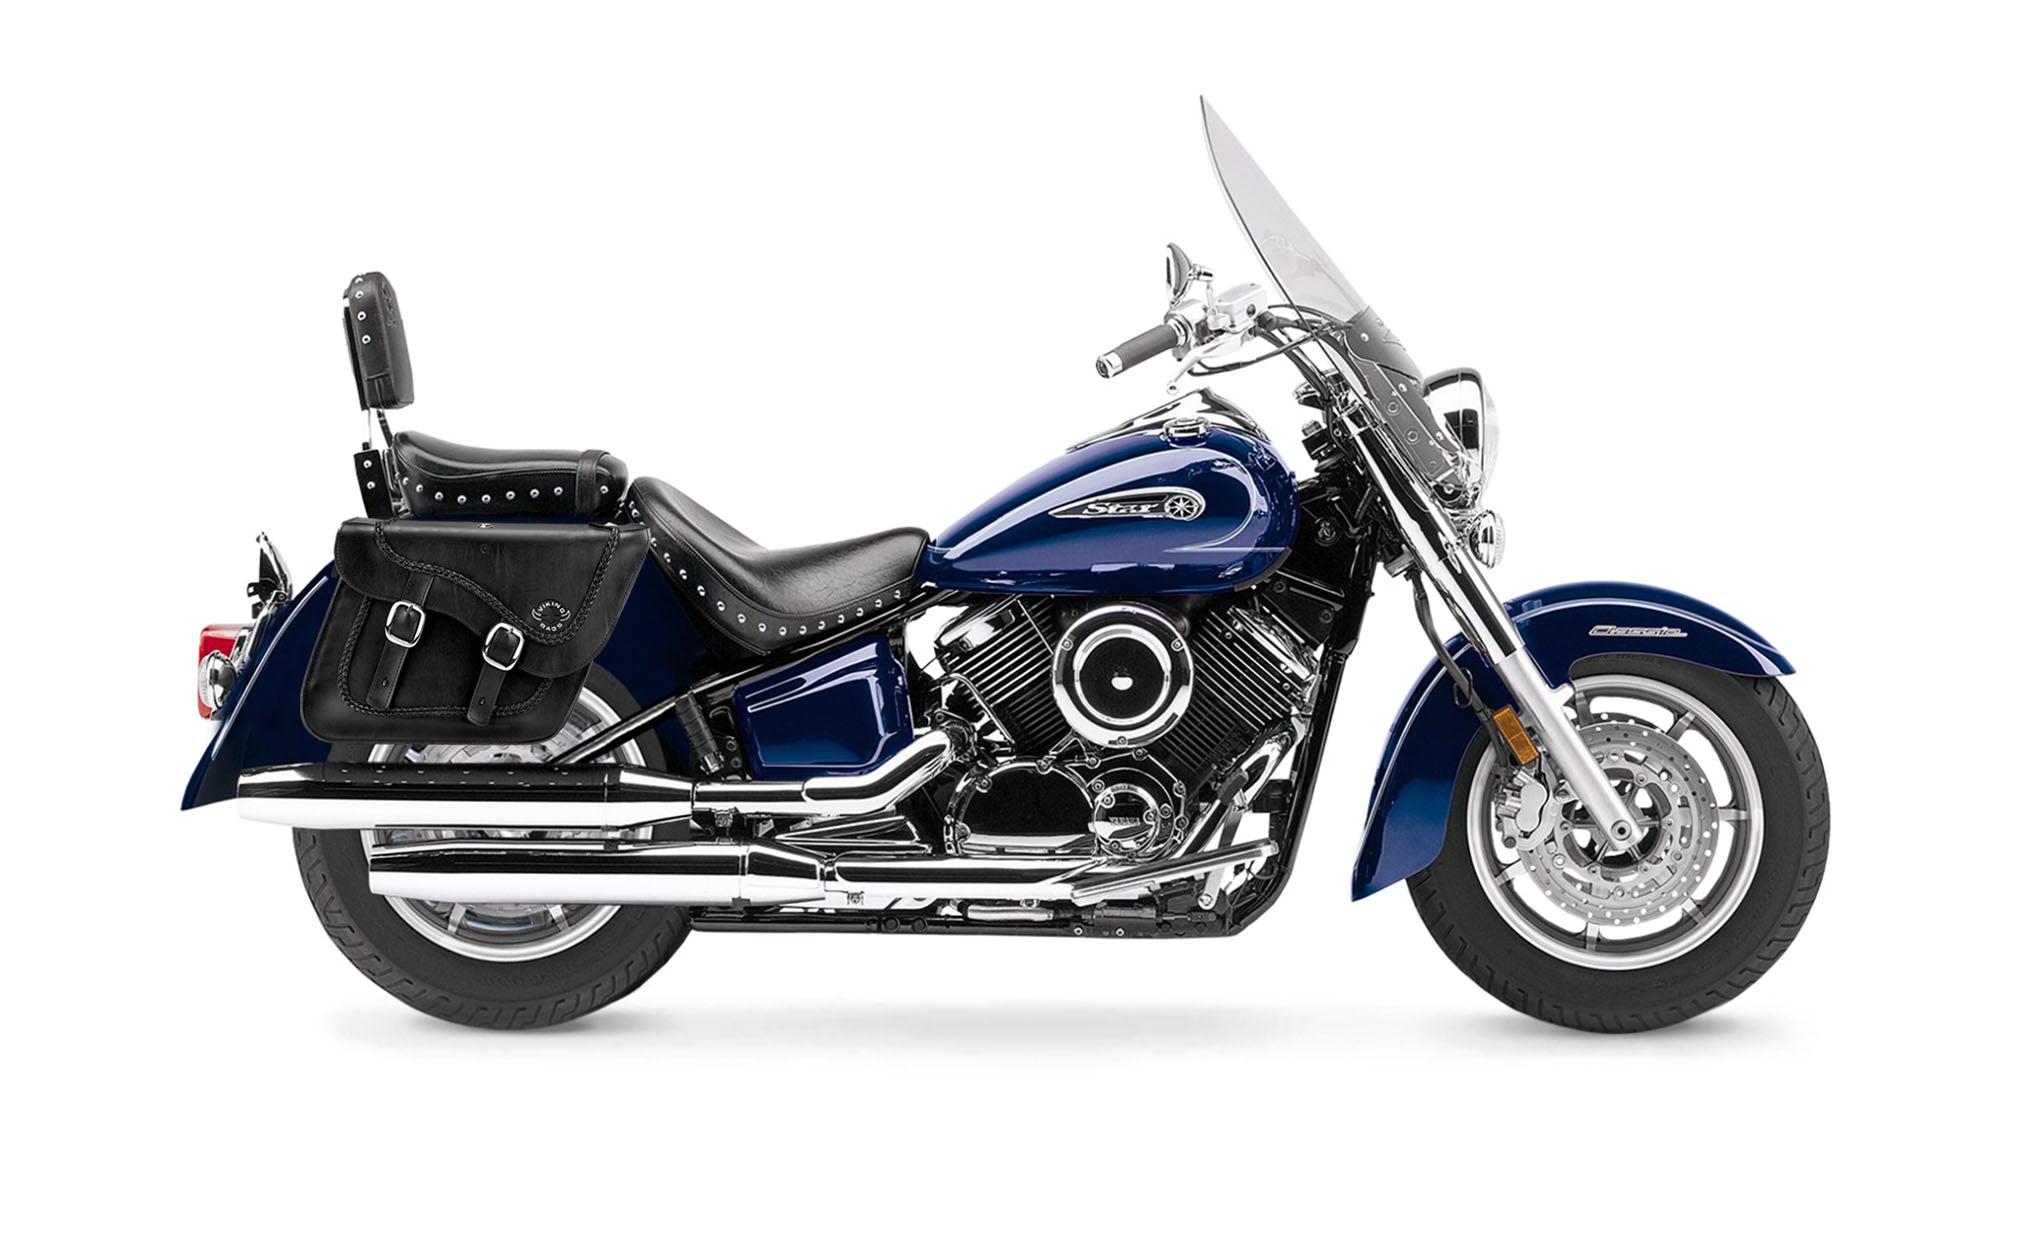 Viking Americano Yamaha Silverado Braided Large Leather Motorcycle Saddlebags on Bike Photo @expand